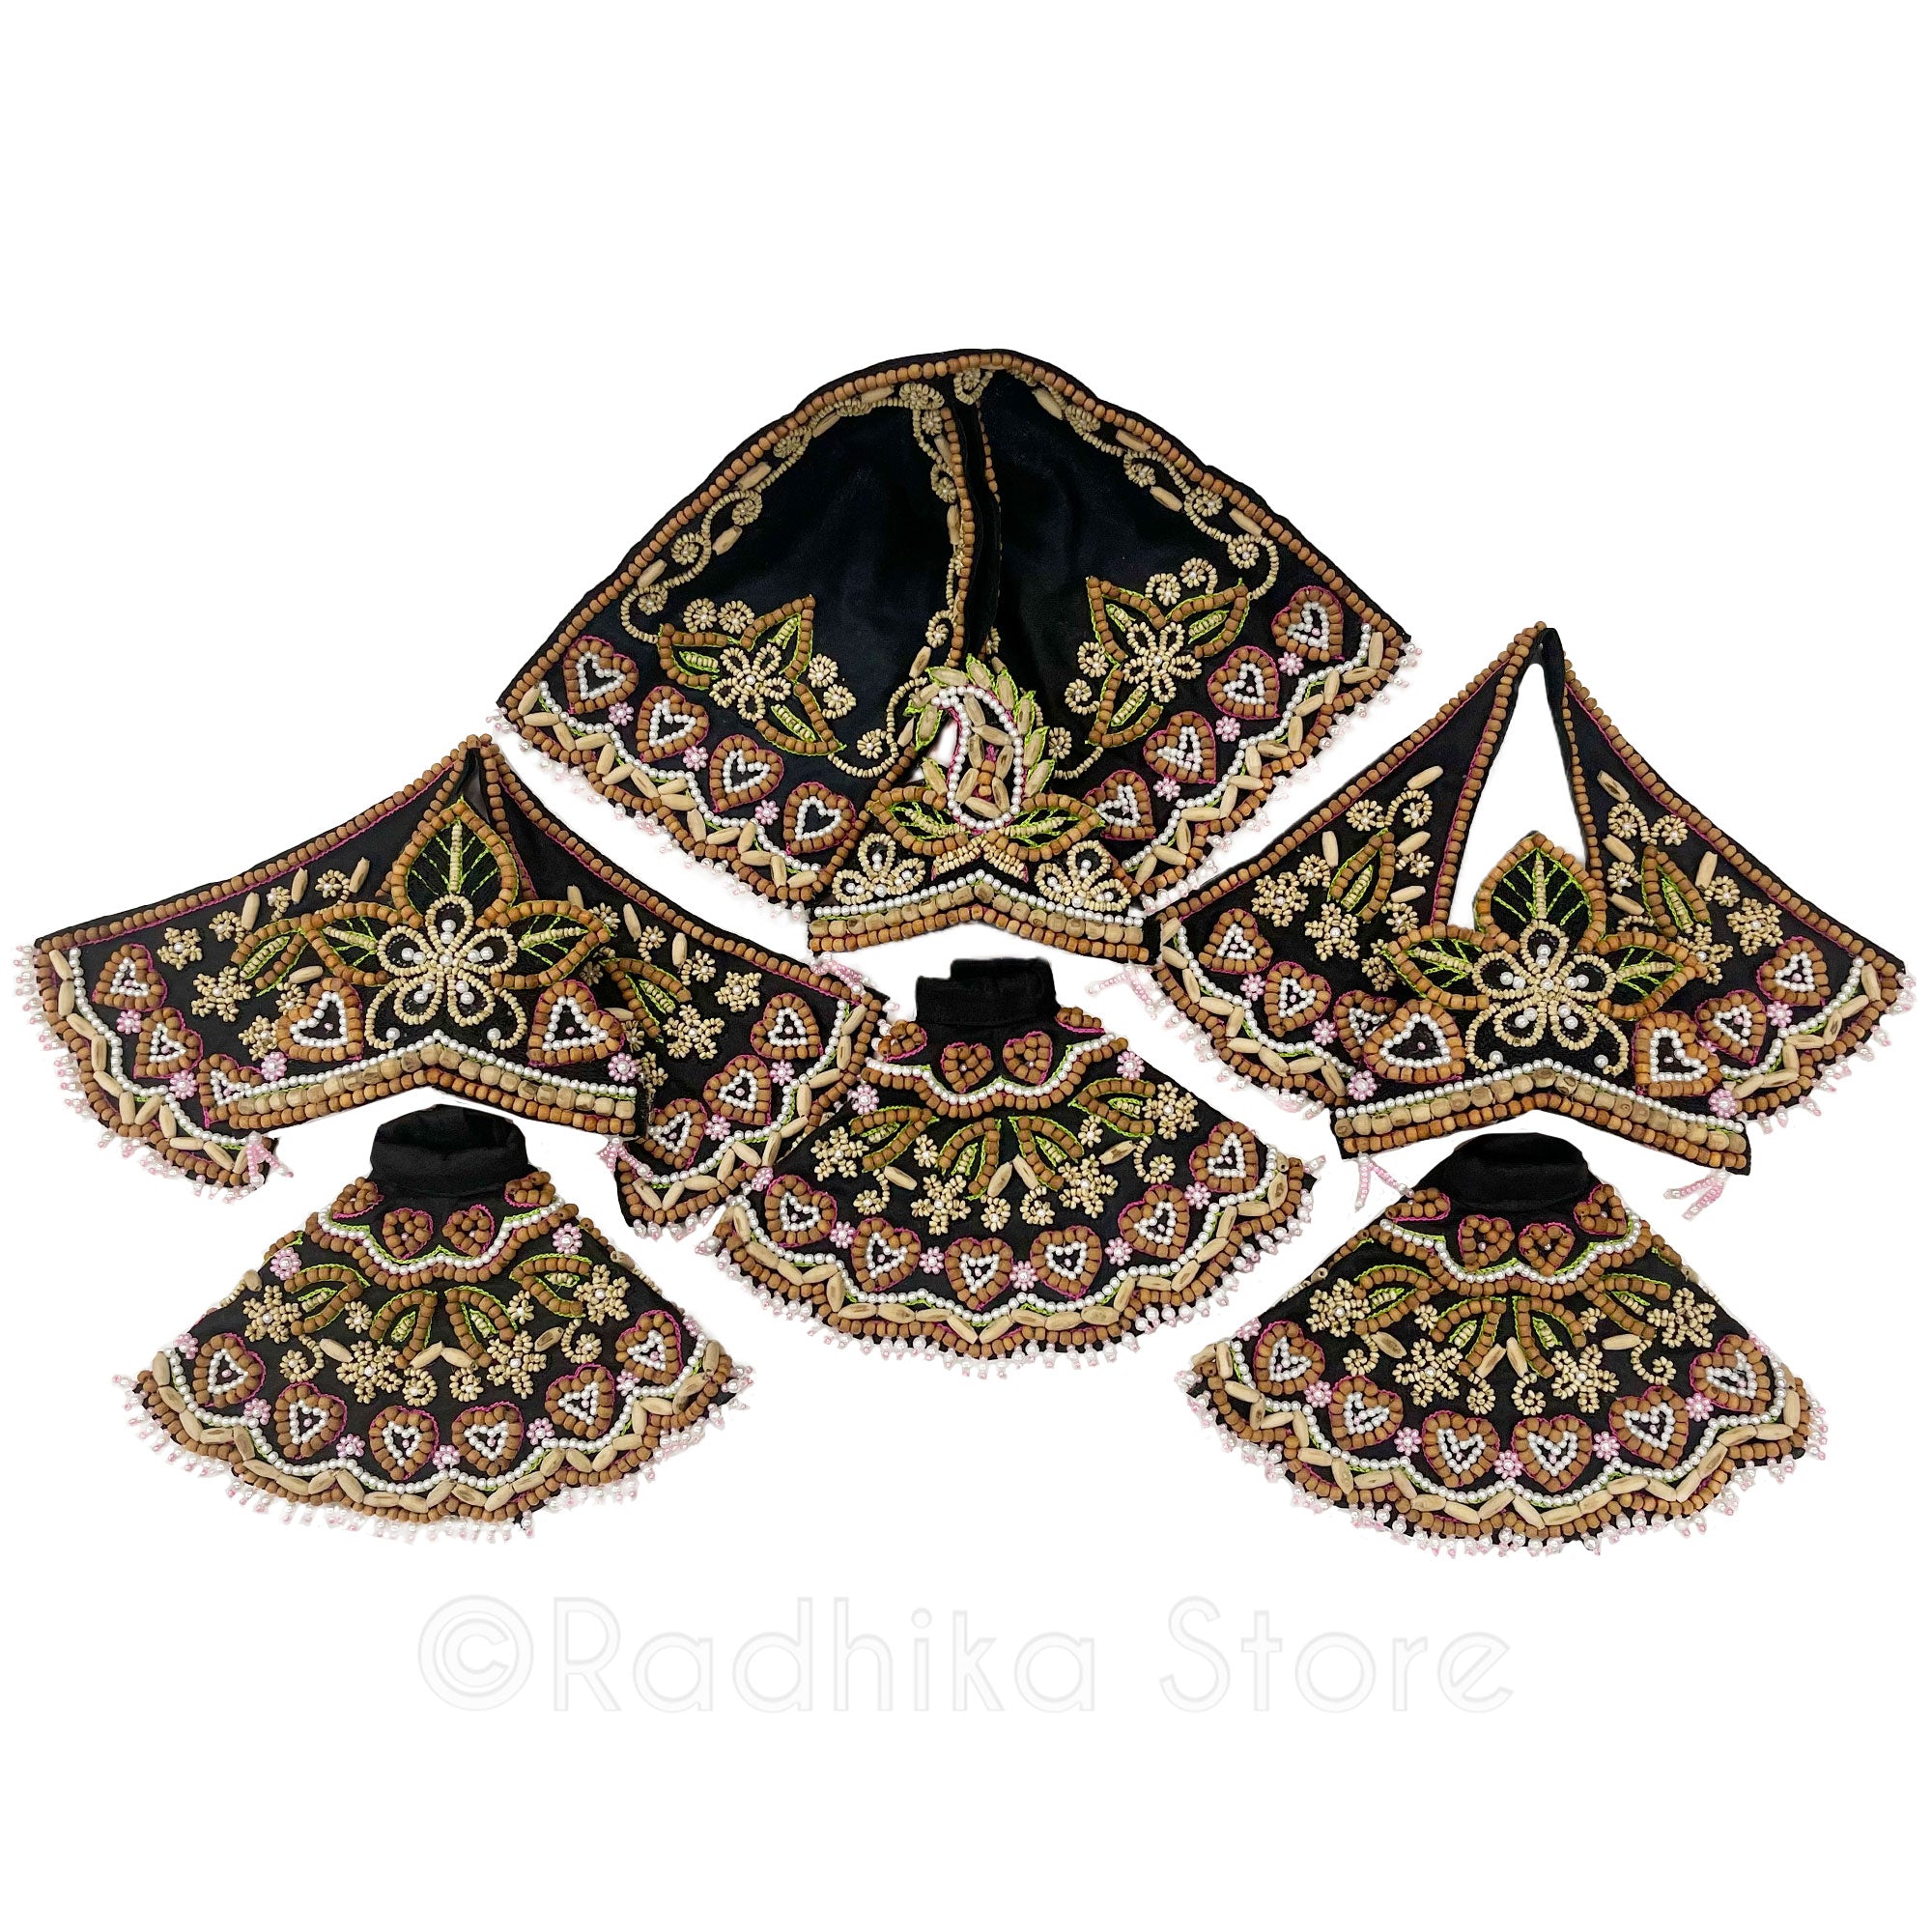 Tulsi Prema-With Sandalwood Too-Silk-Black-Jagannath Baladeva Subhadra Deity Outfit